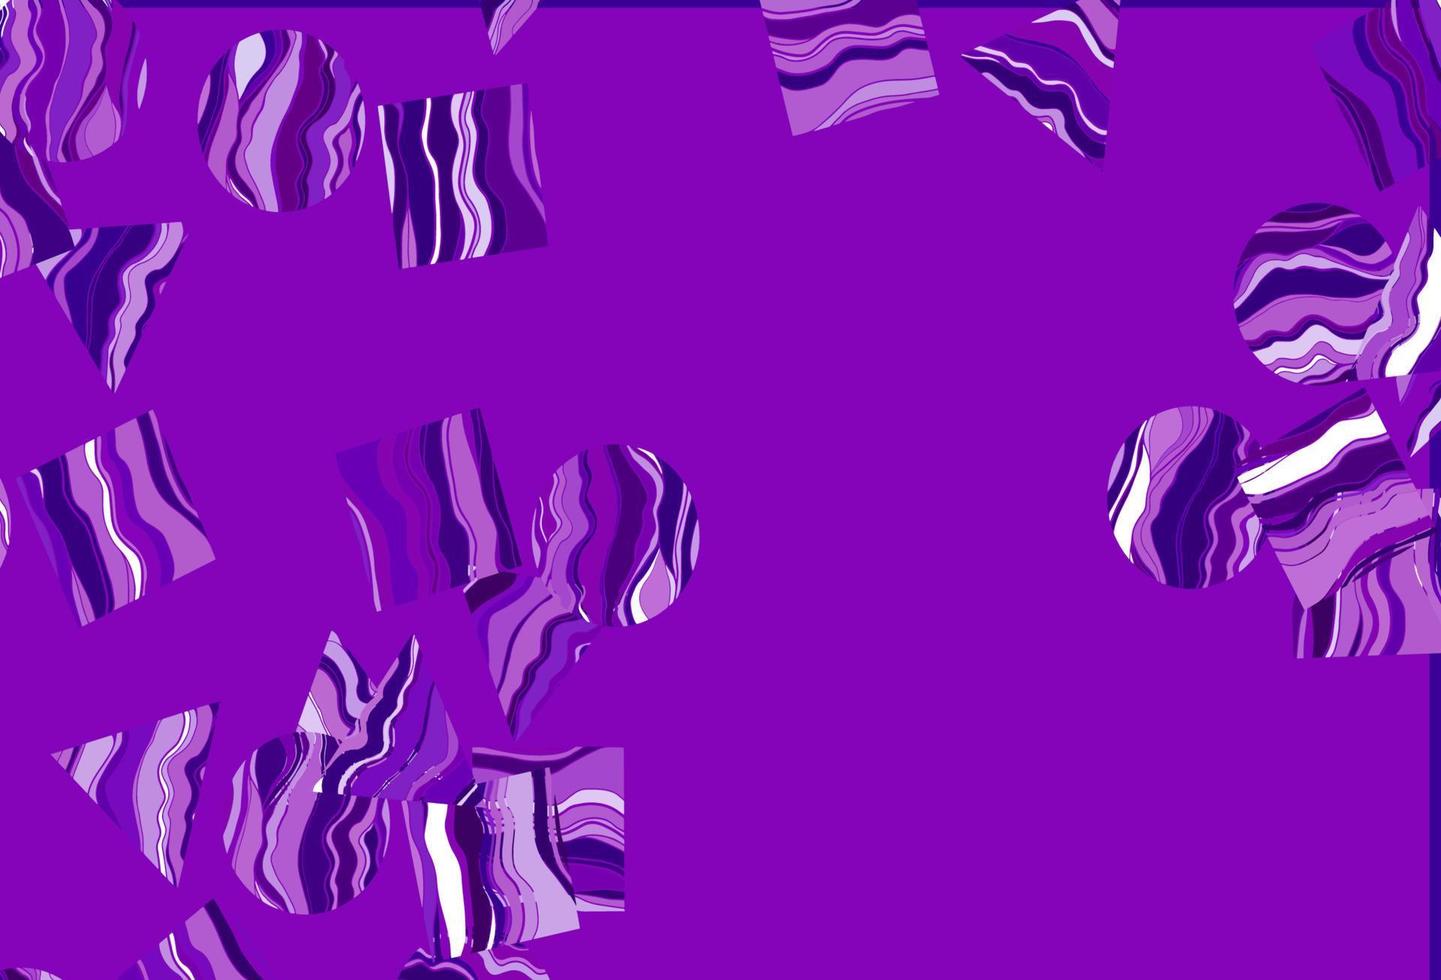 Telón de fondo de vector púrpura claro con líneas, círculos, rombos.